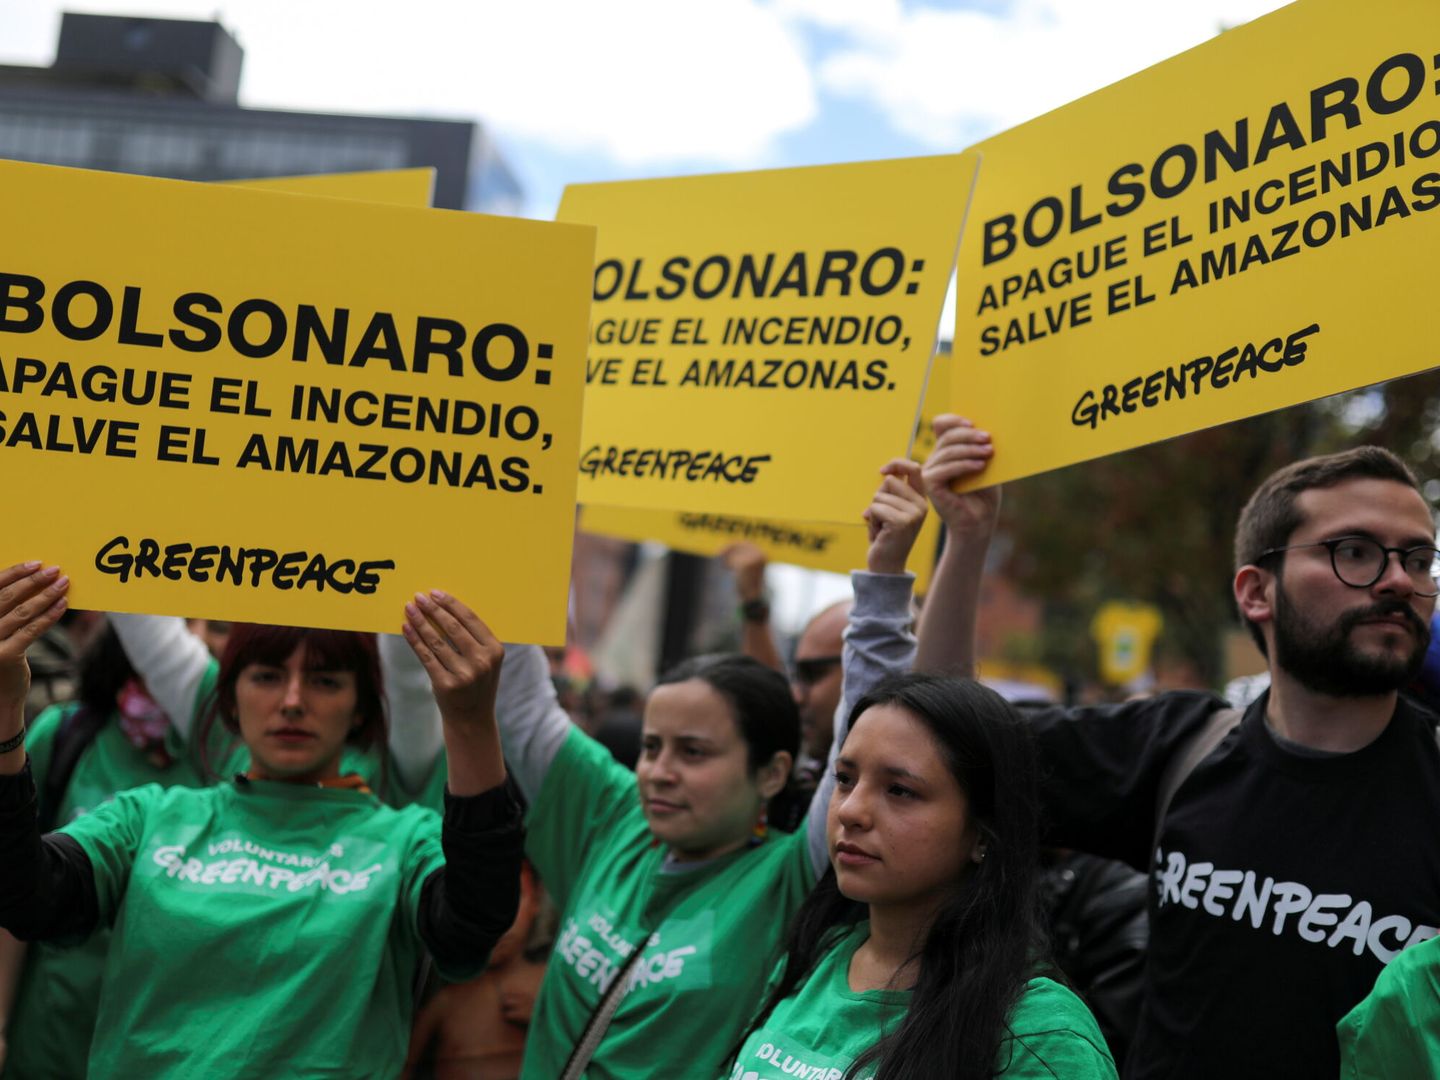 Protestas de Greenpeace contra Bolsonaro en Bogotá, Colombia. (Reuters)